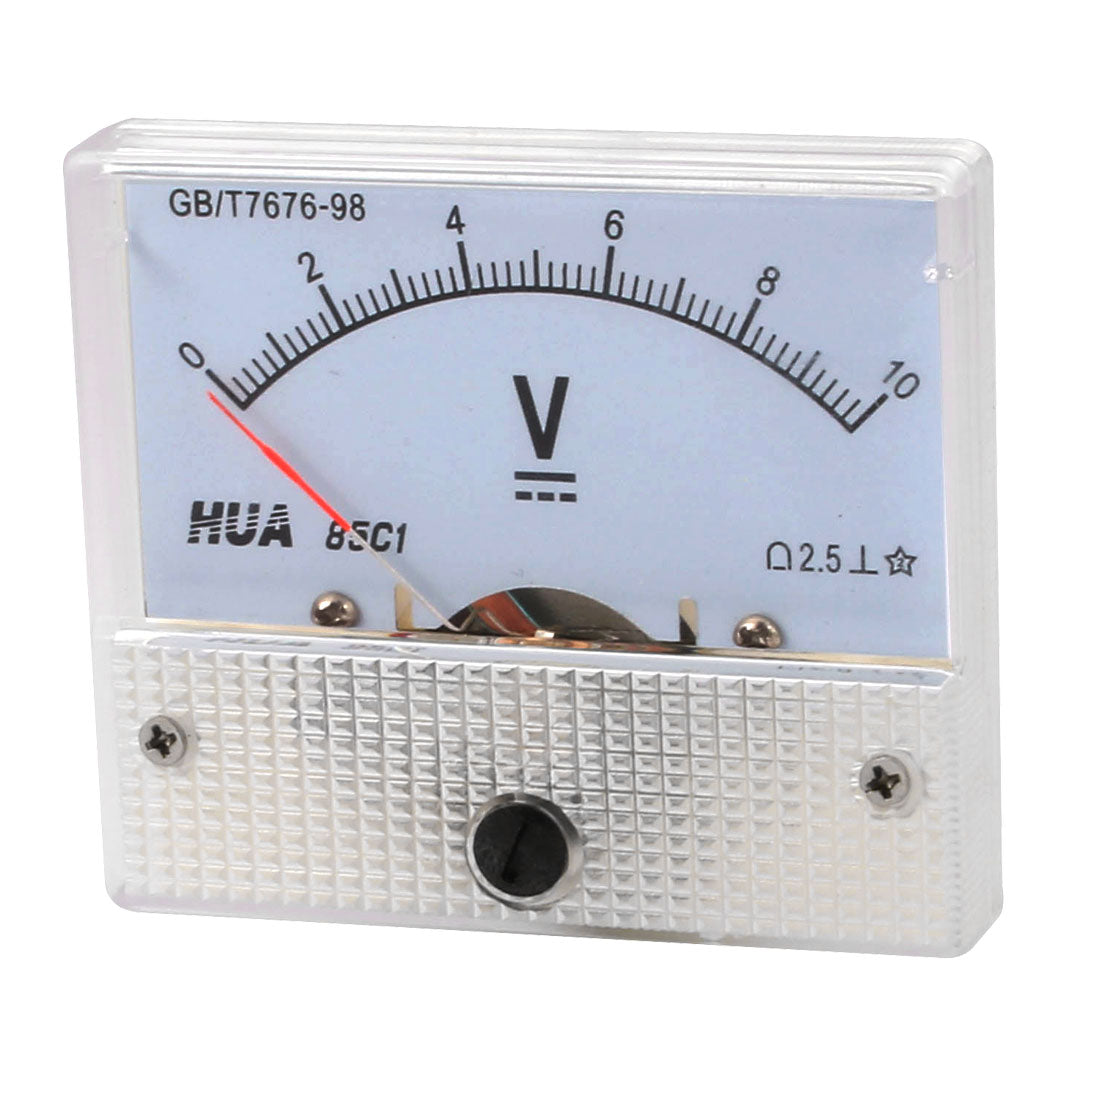 uxcell Uxcell 64mm x 56mm Dial Panel Gauge Voltage Voltmeter DC 0-10V 85C1-V